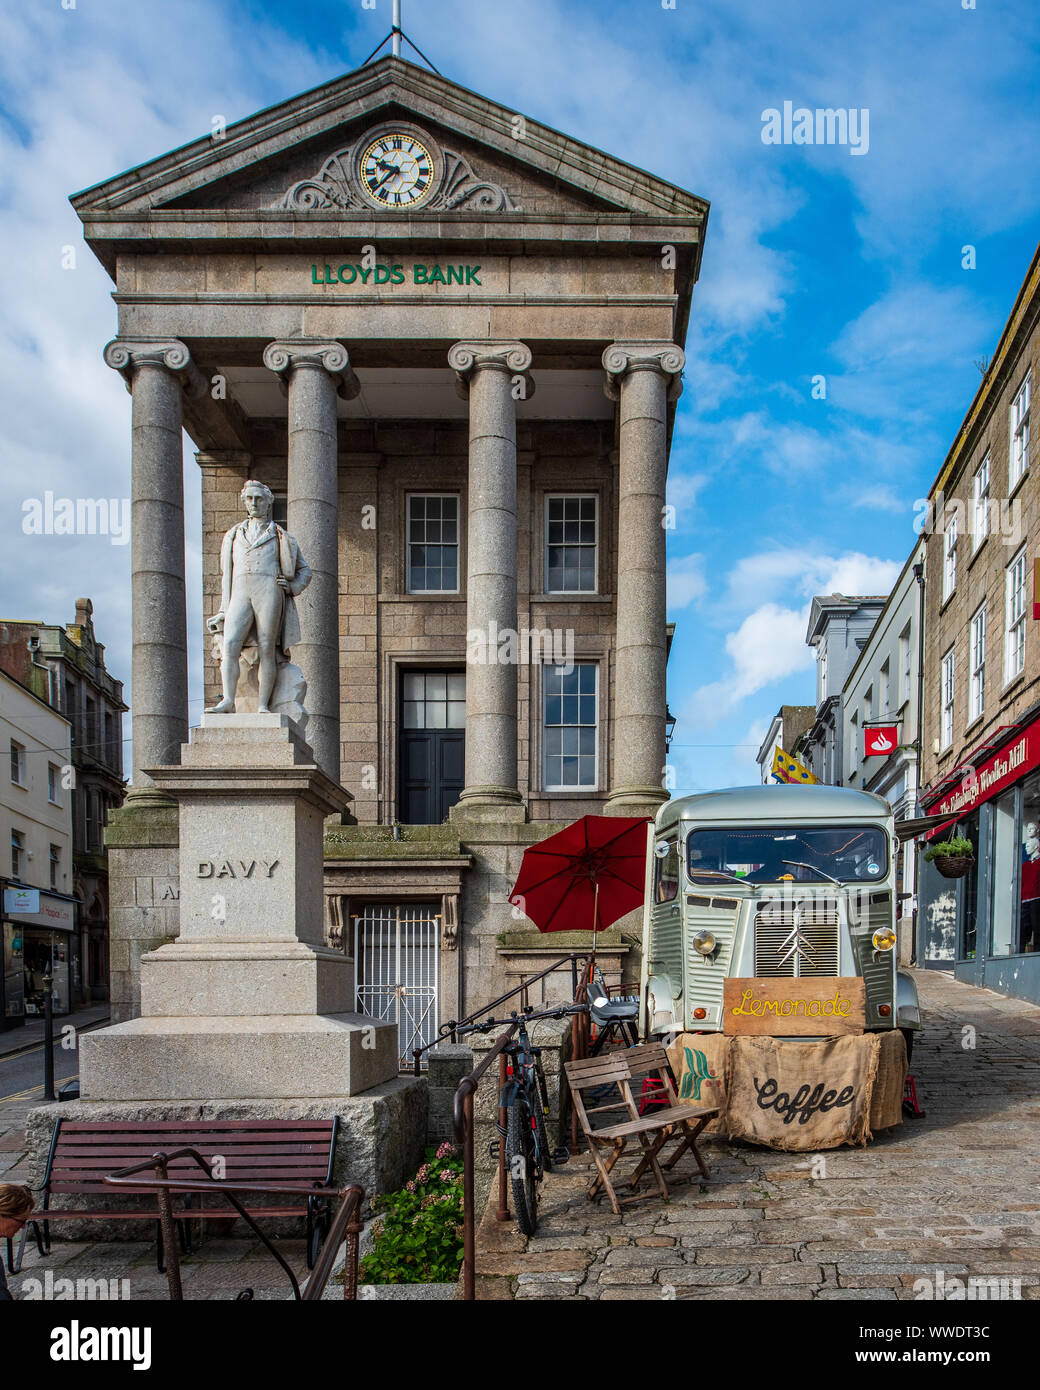 Statue de Sir Humphry Davy (1872) en face de la Banque Lloyds Penzance, situé dans la maison du marché, un bâtiment classé a ouvert ses portes en 1838. Banque D'Images